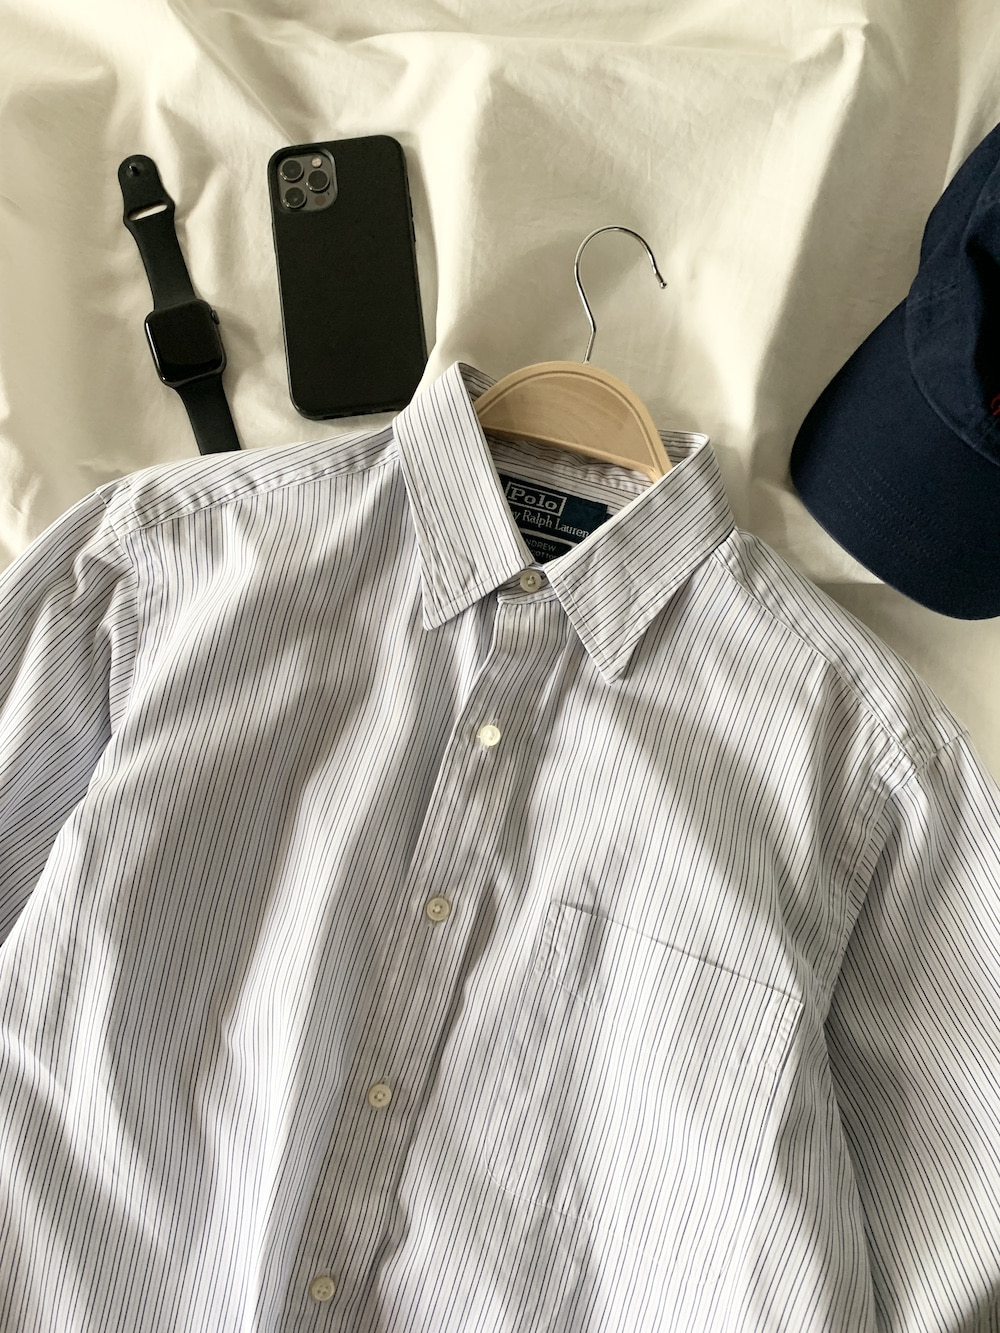 [ 95-100 ] Polo Ralph Lauren Shirt (5266)